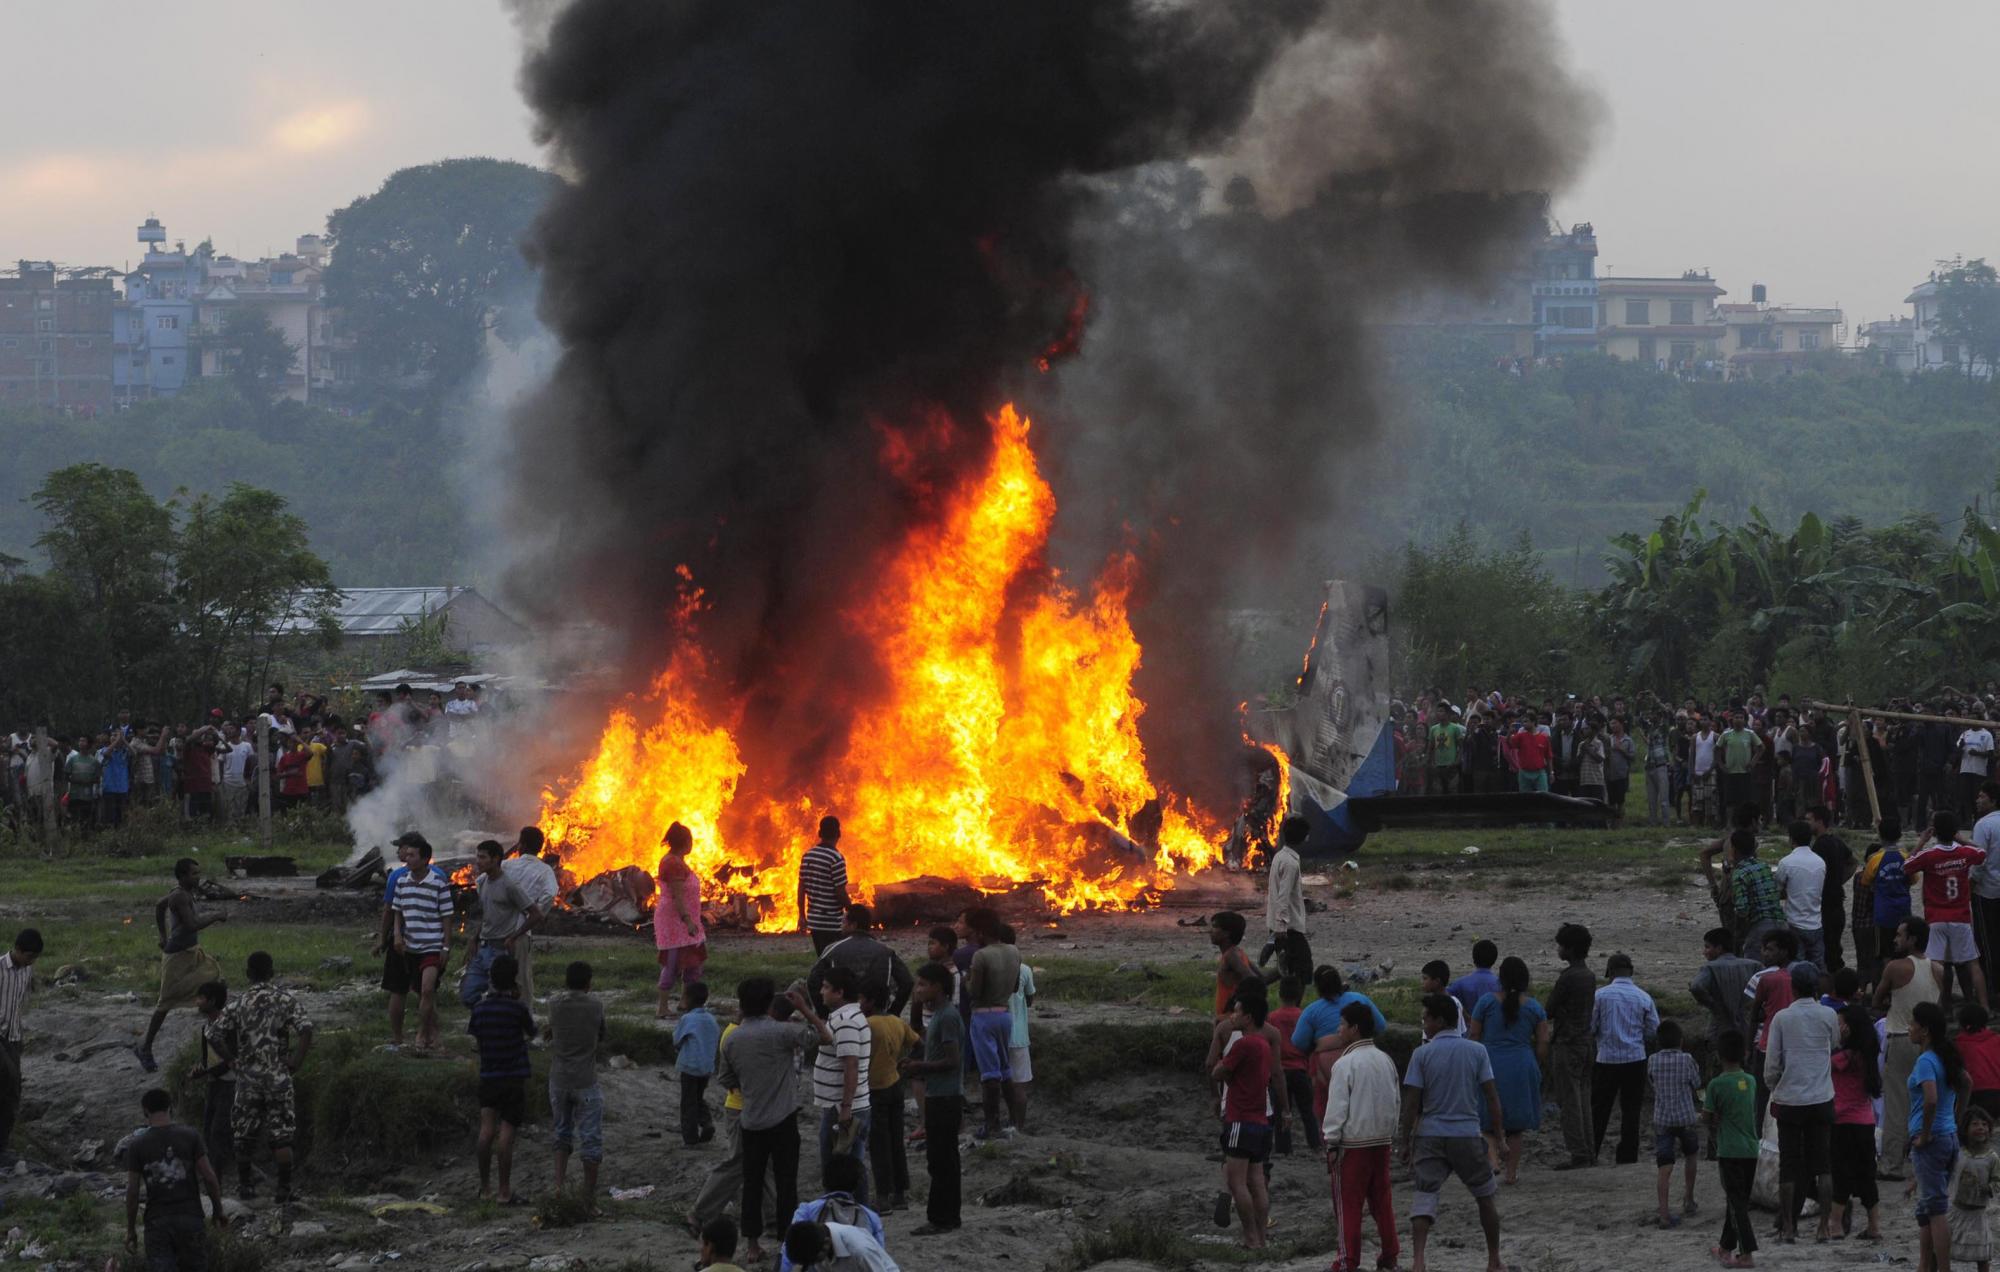 尼泊尔小型客机坠毁19人遇难 包括4名中国公民和1名美籍华人